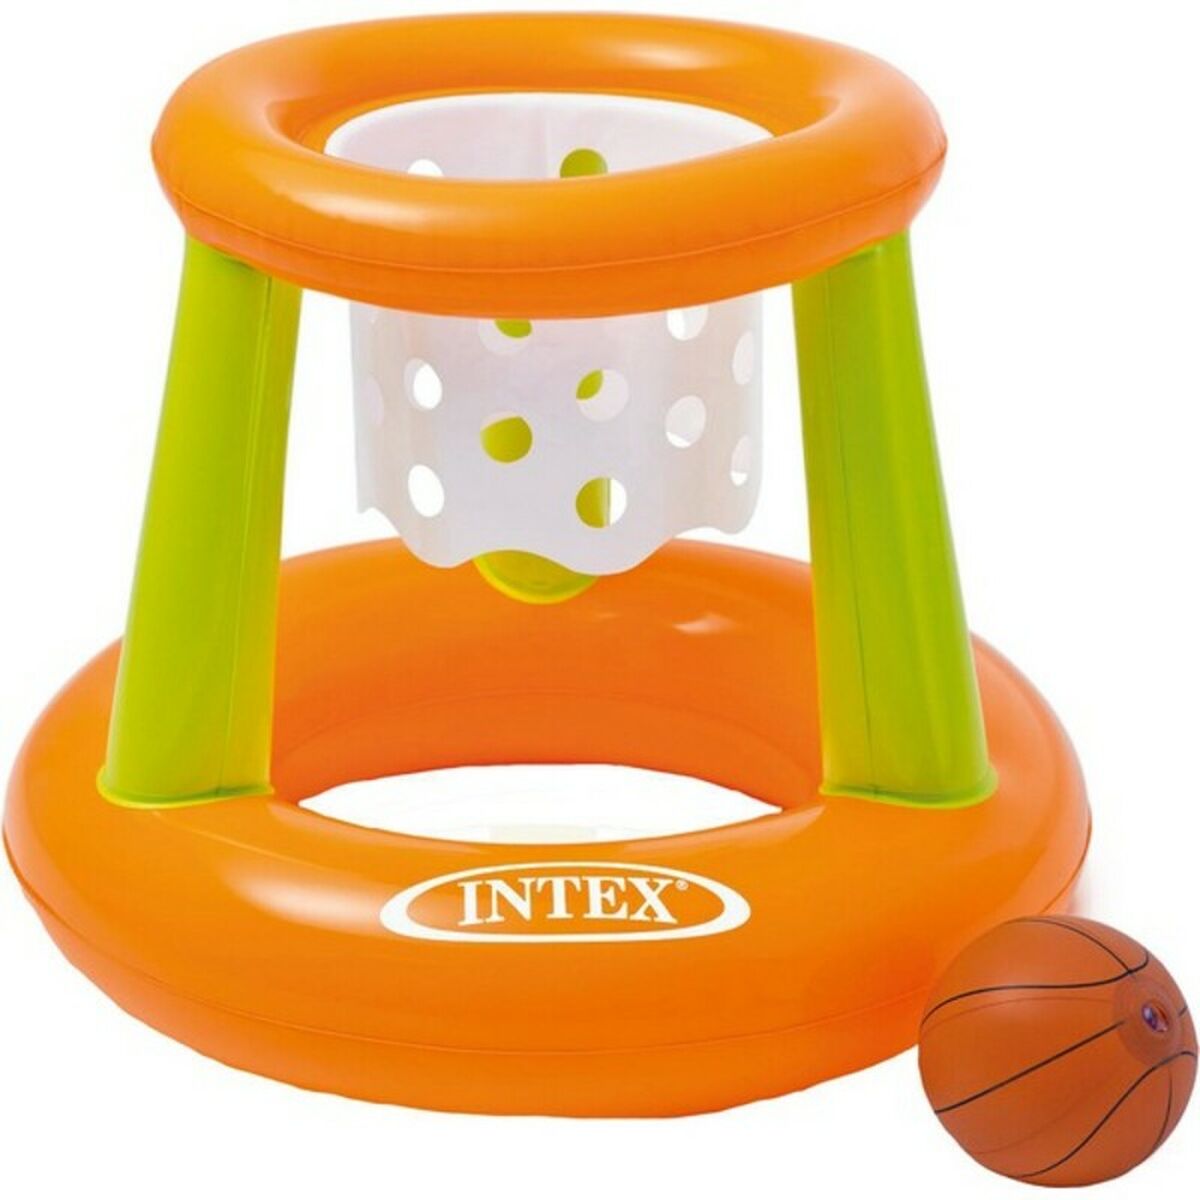 Oppblåsbart Spill Intex Oransje Grønn Basketballkurv 67 x 55 cm